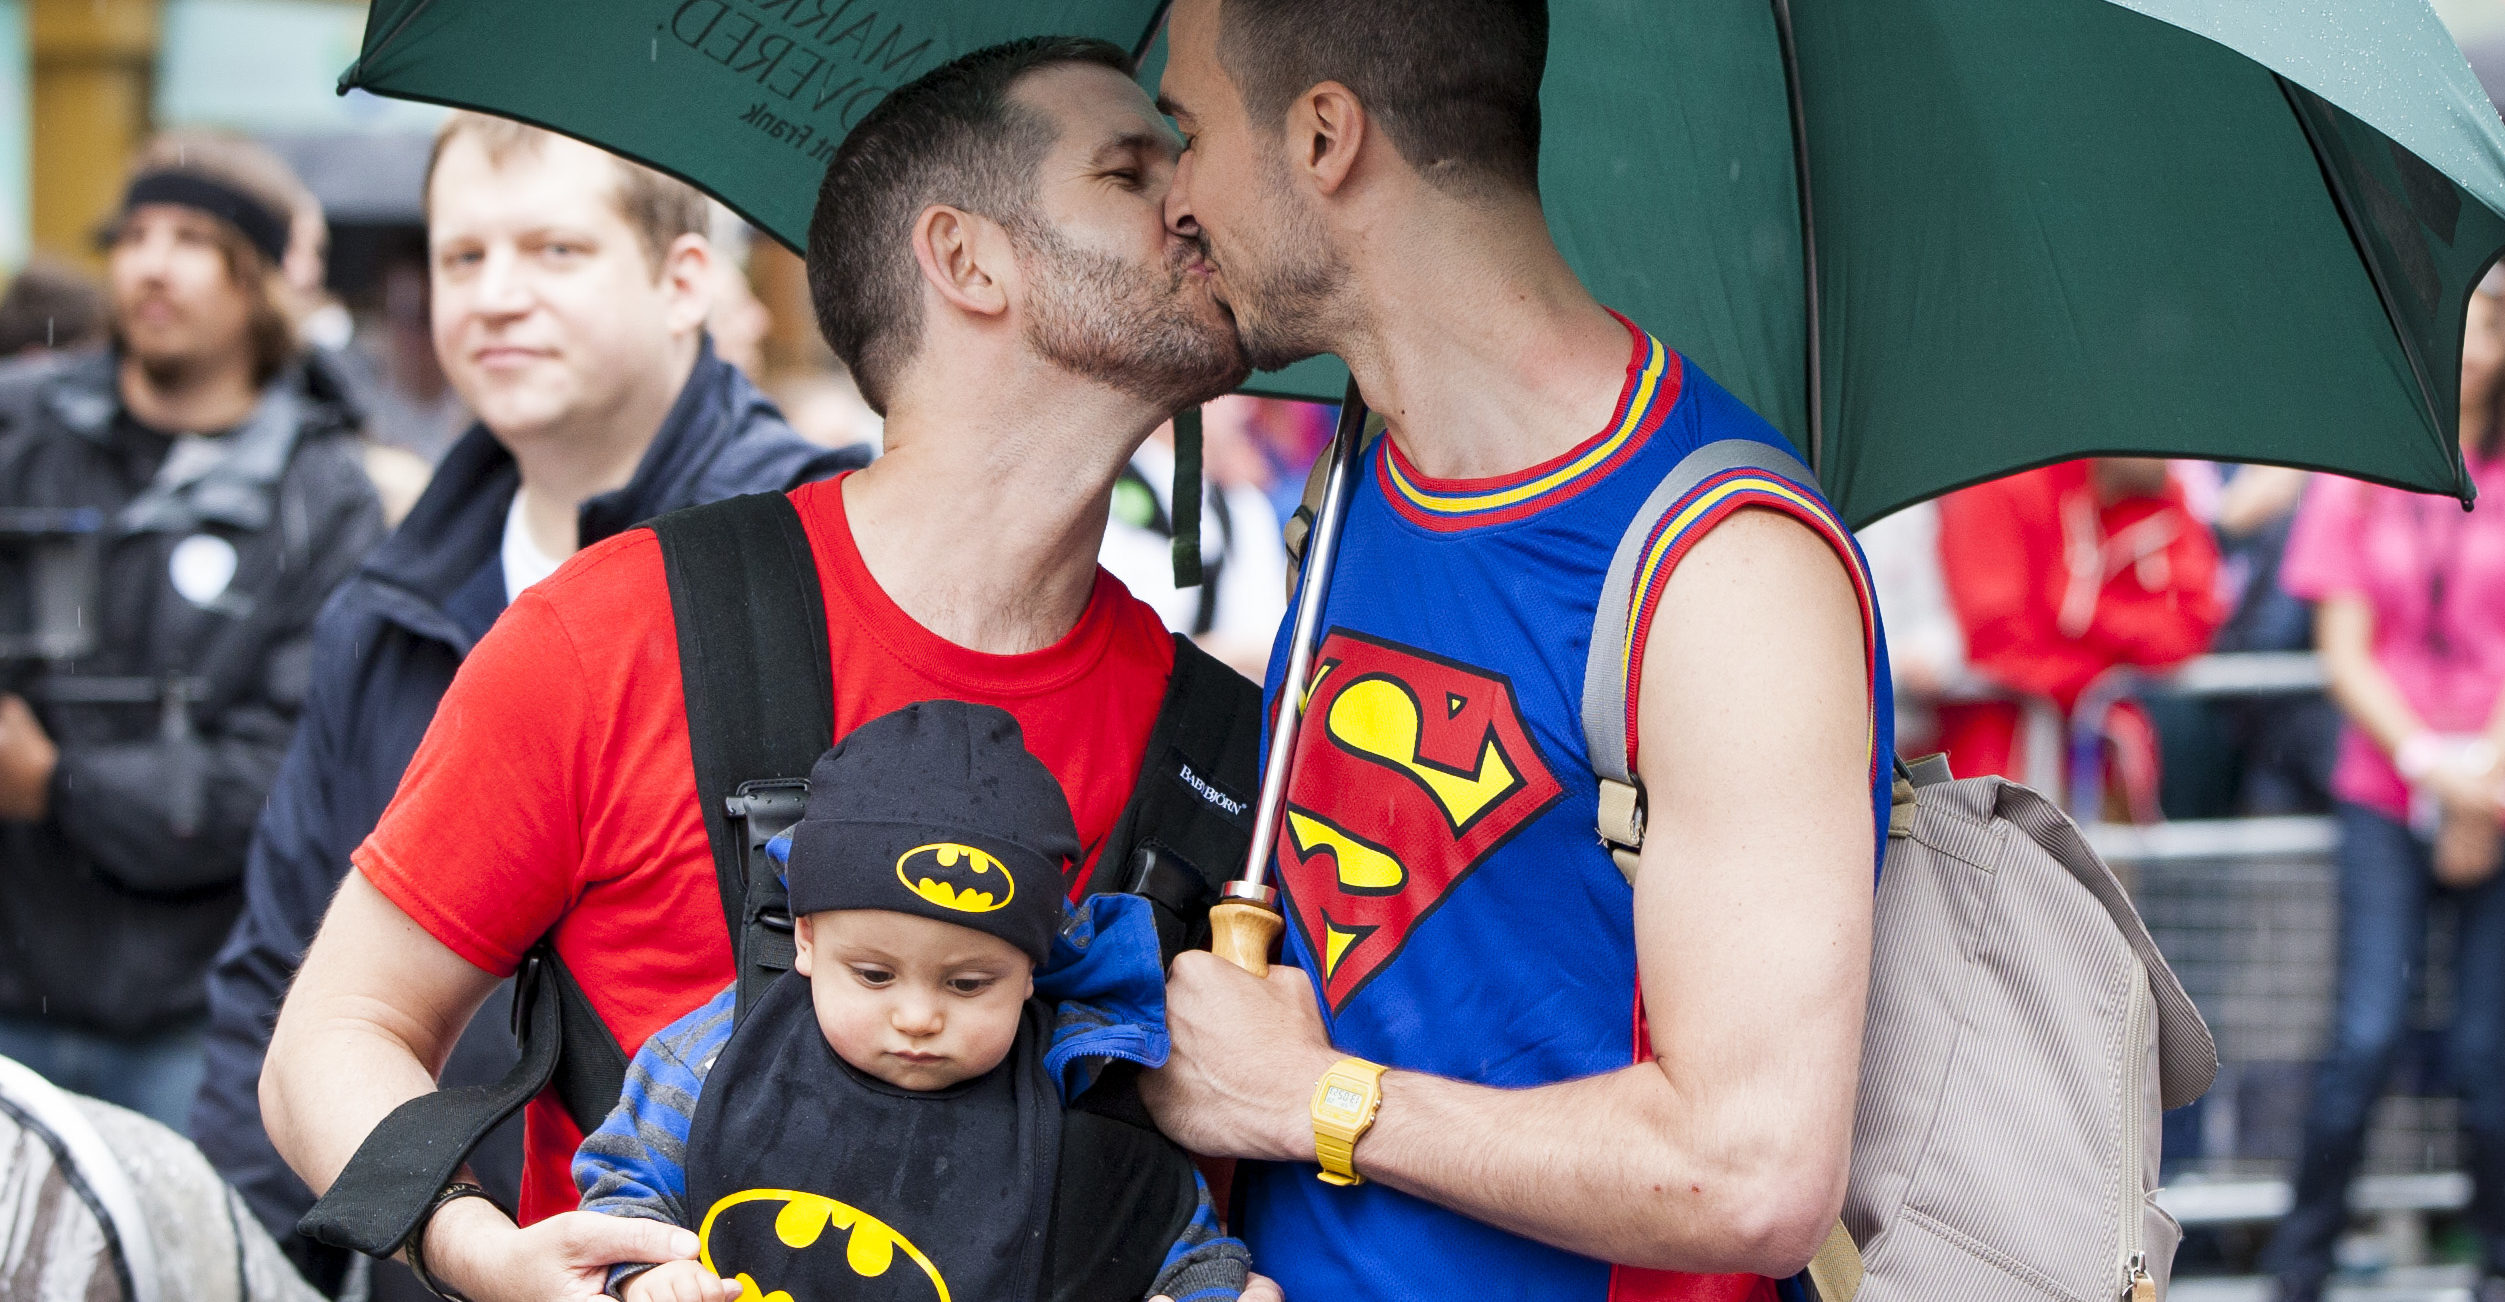 gay cop kisses boyfriend at gay pride nyc